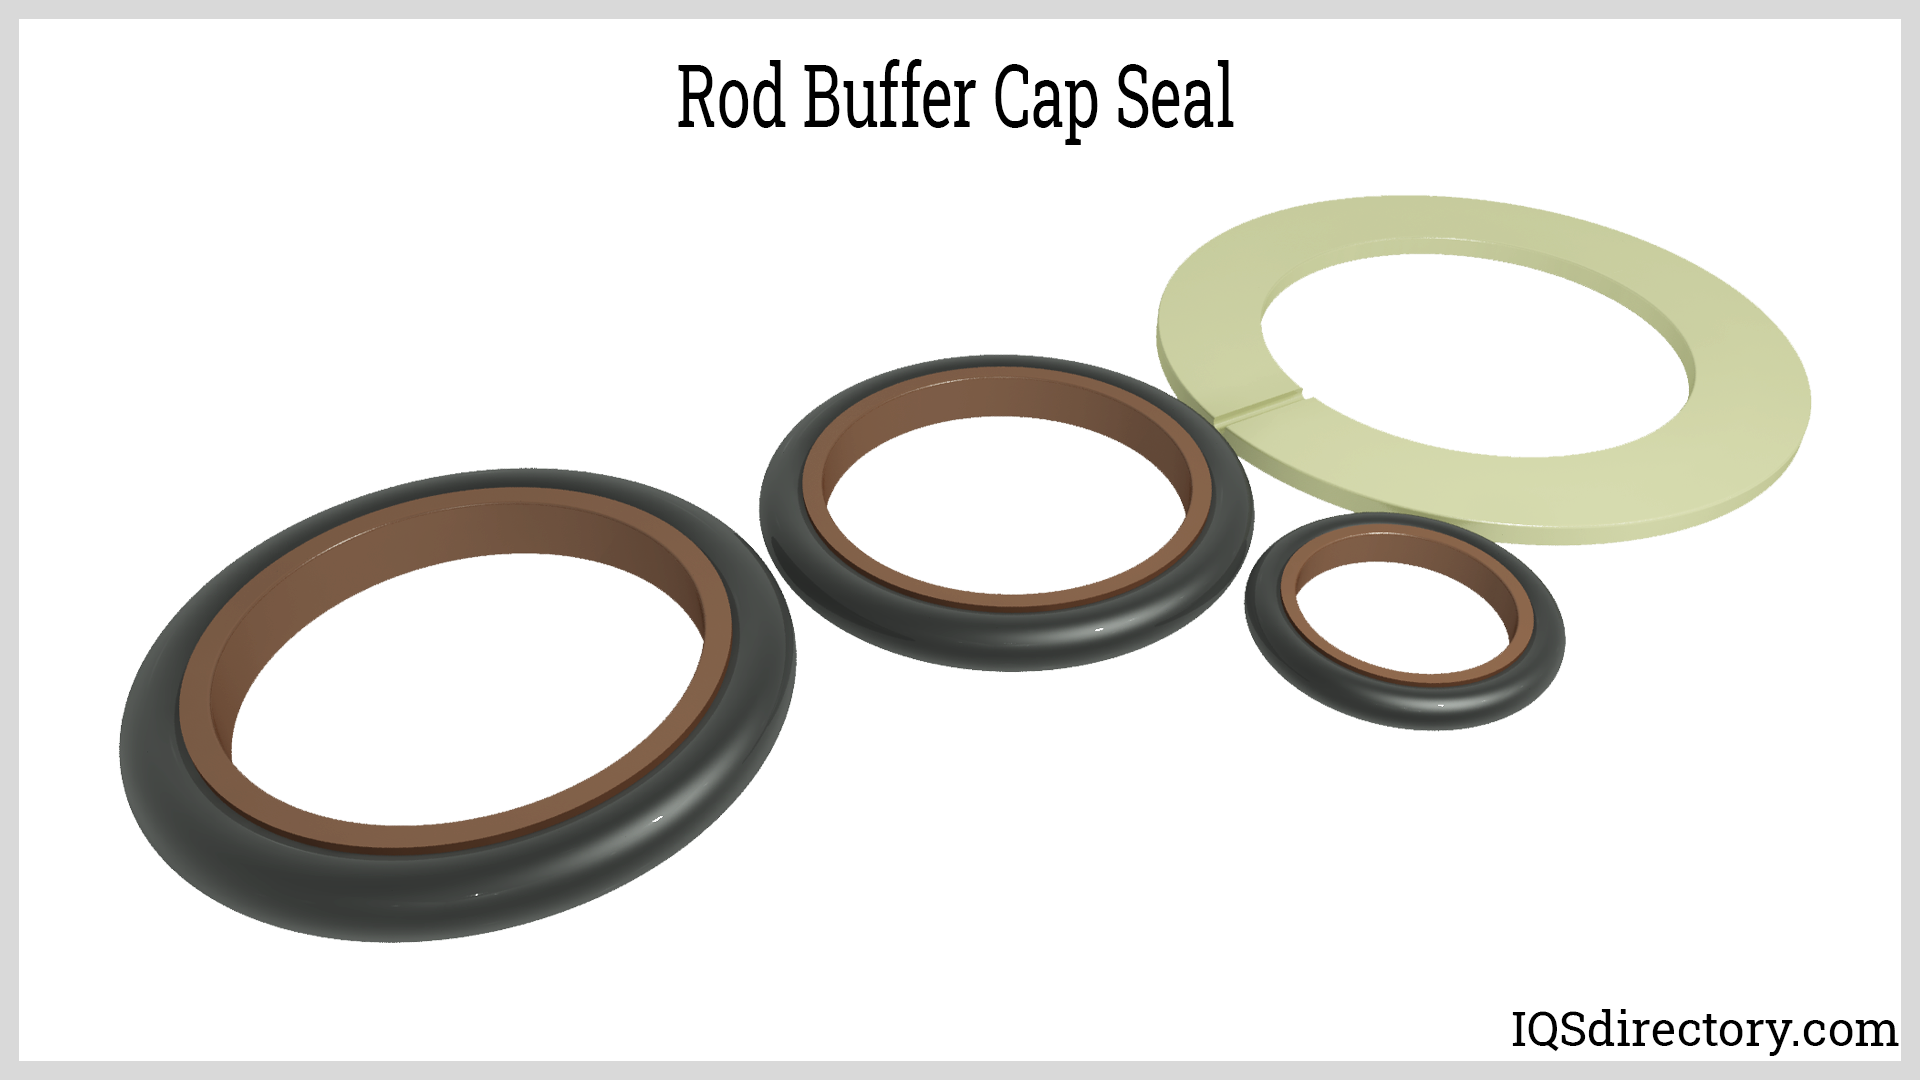 Rod Buffer Cap Seal